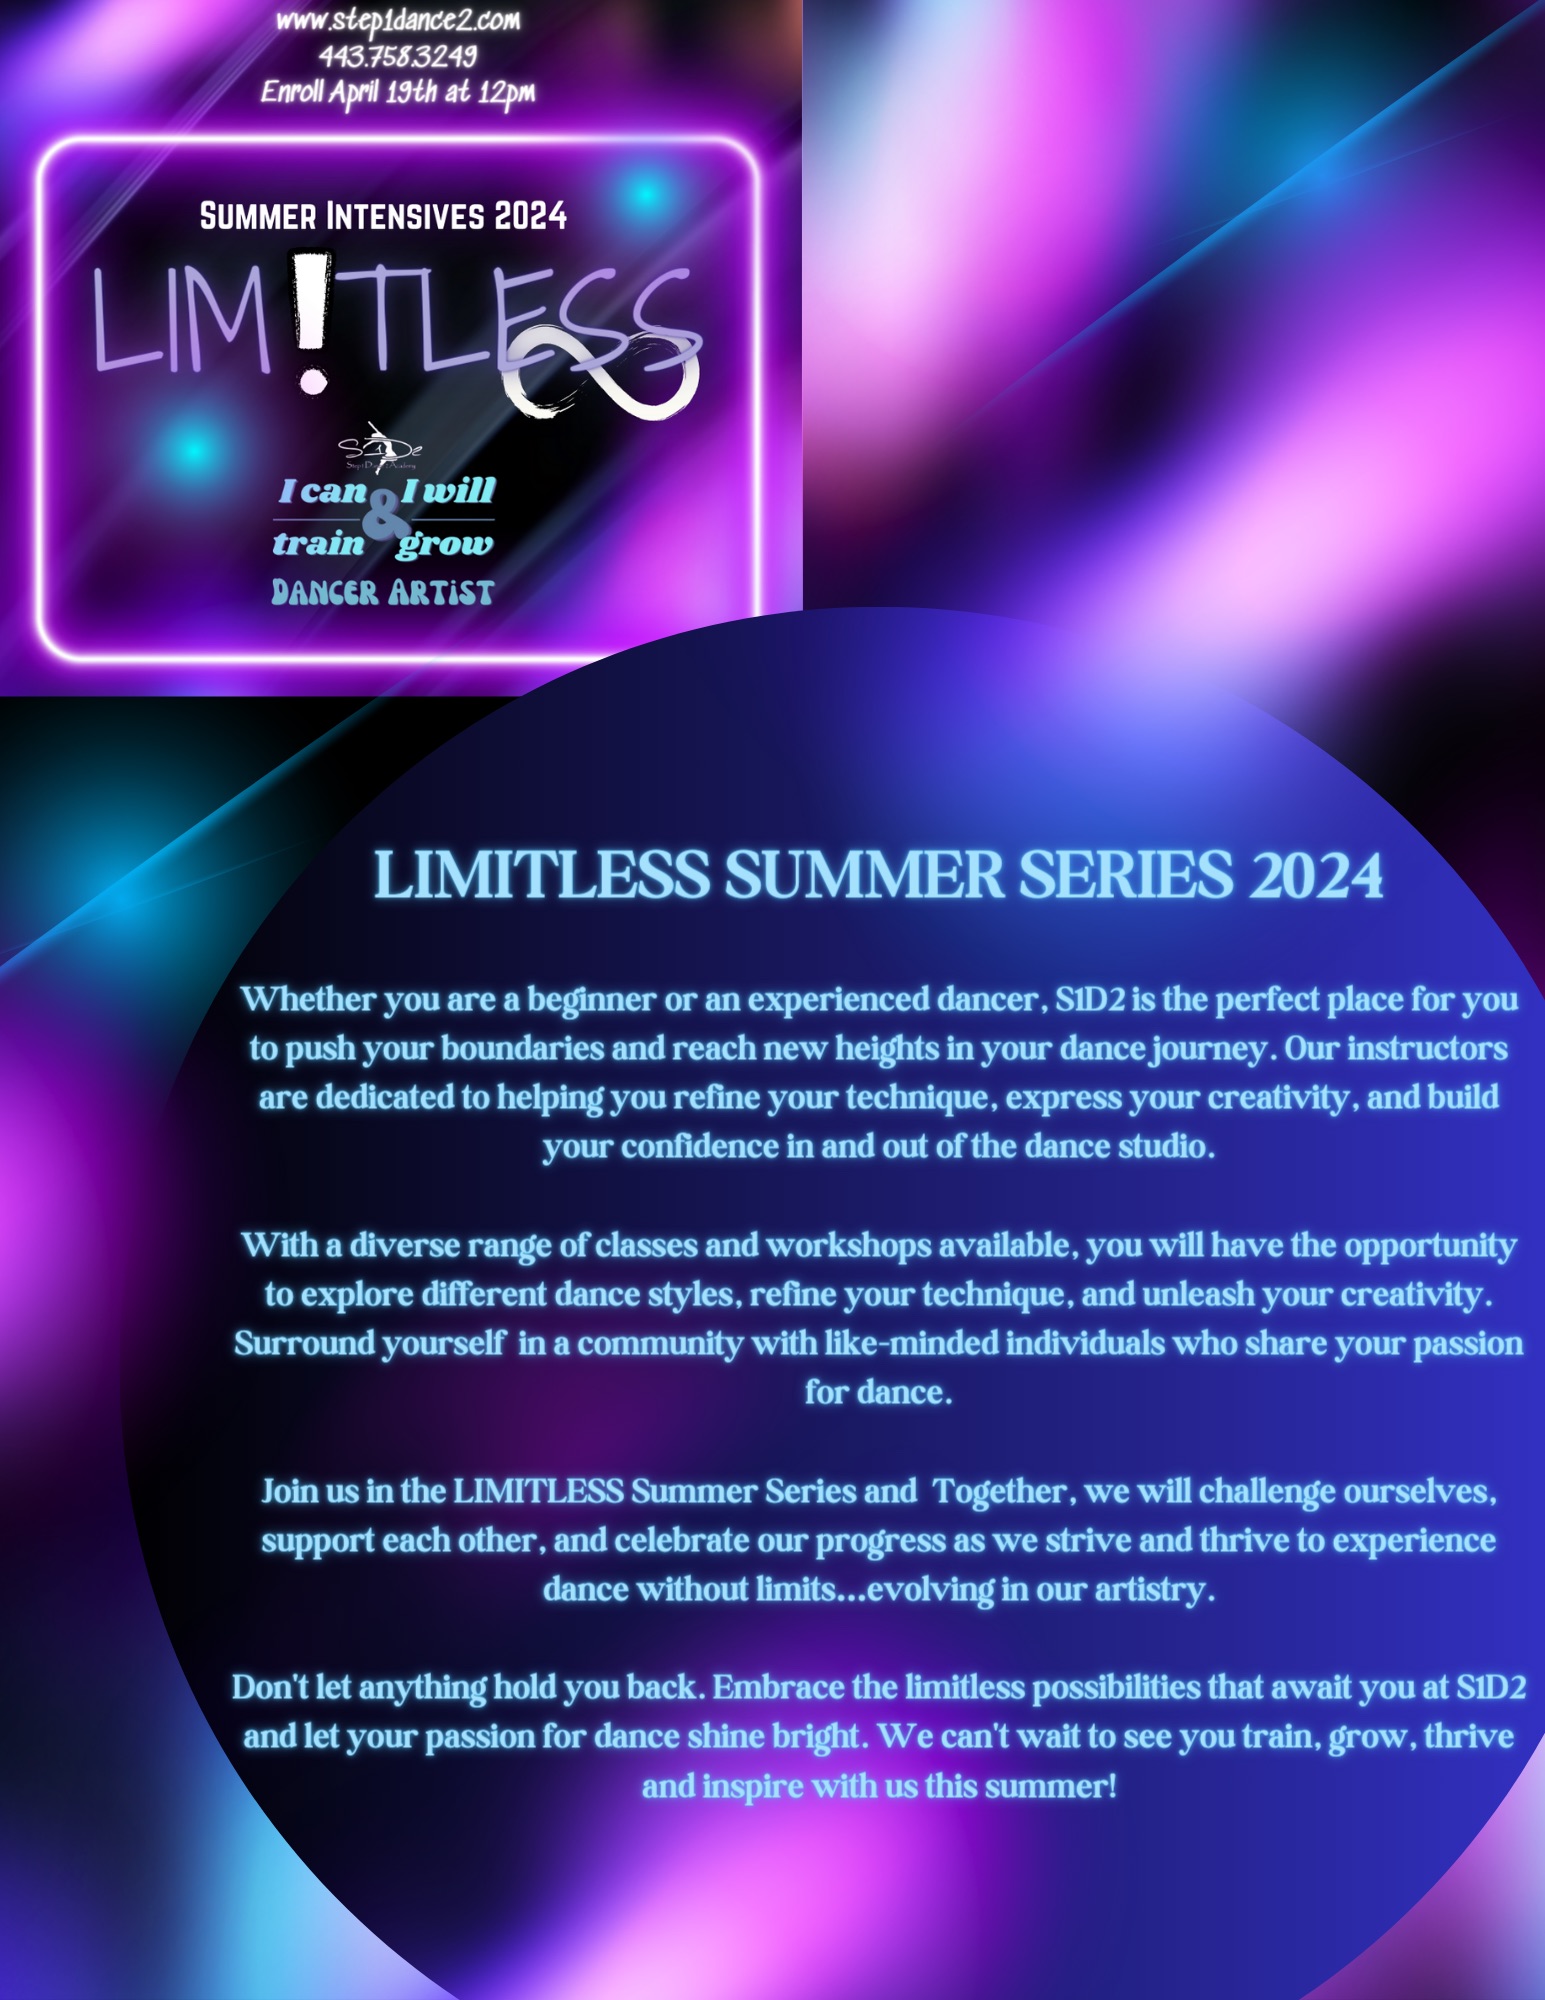 Limitless Summer Series 2024